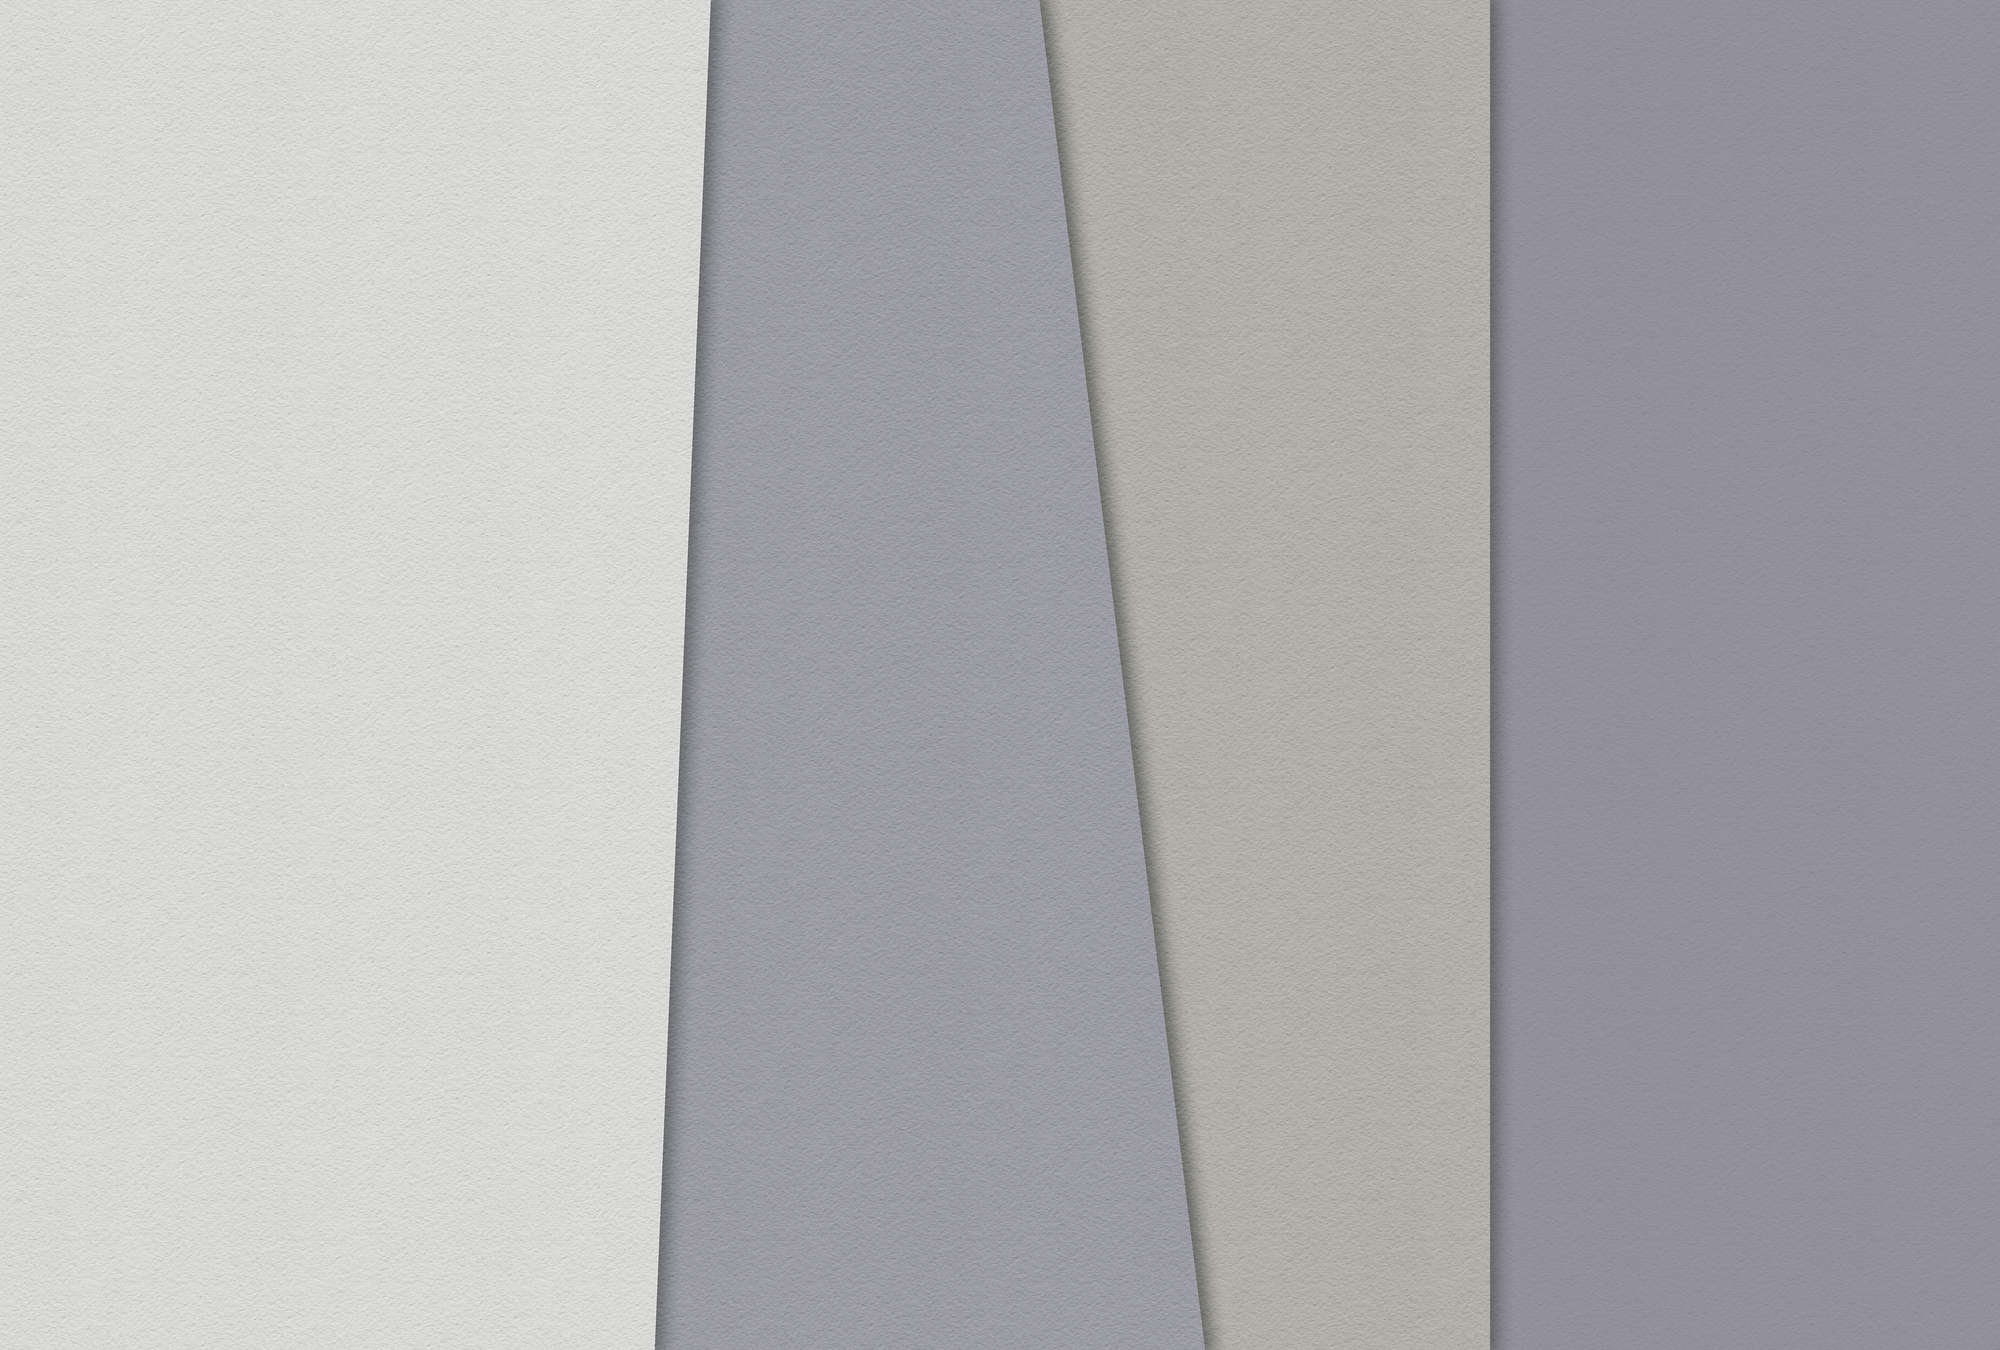             Papel estratificado 2 - Papel pintado gráfico, estructura de papel hecha a mano diseño minimalista - Crema, Verde | Liso liso mate
        